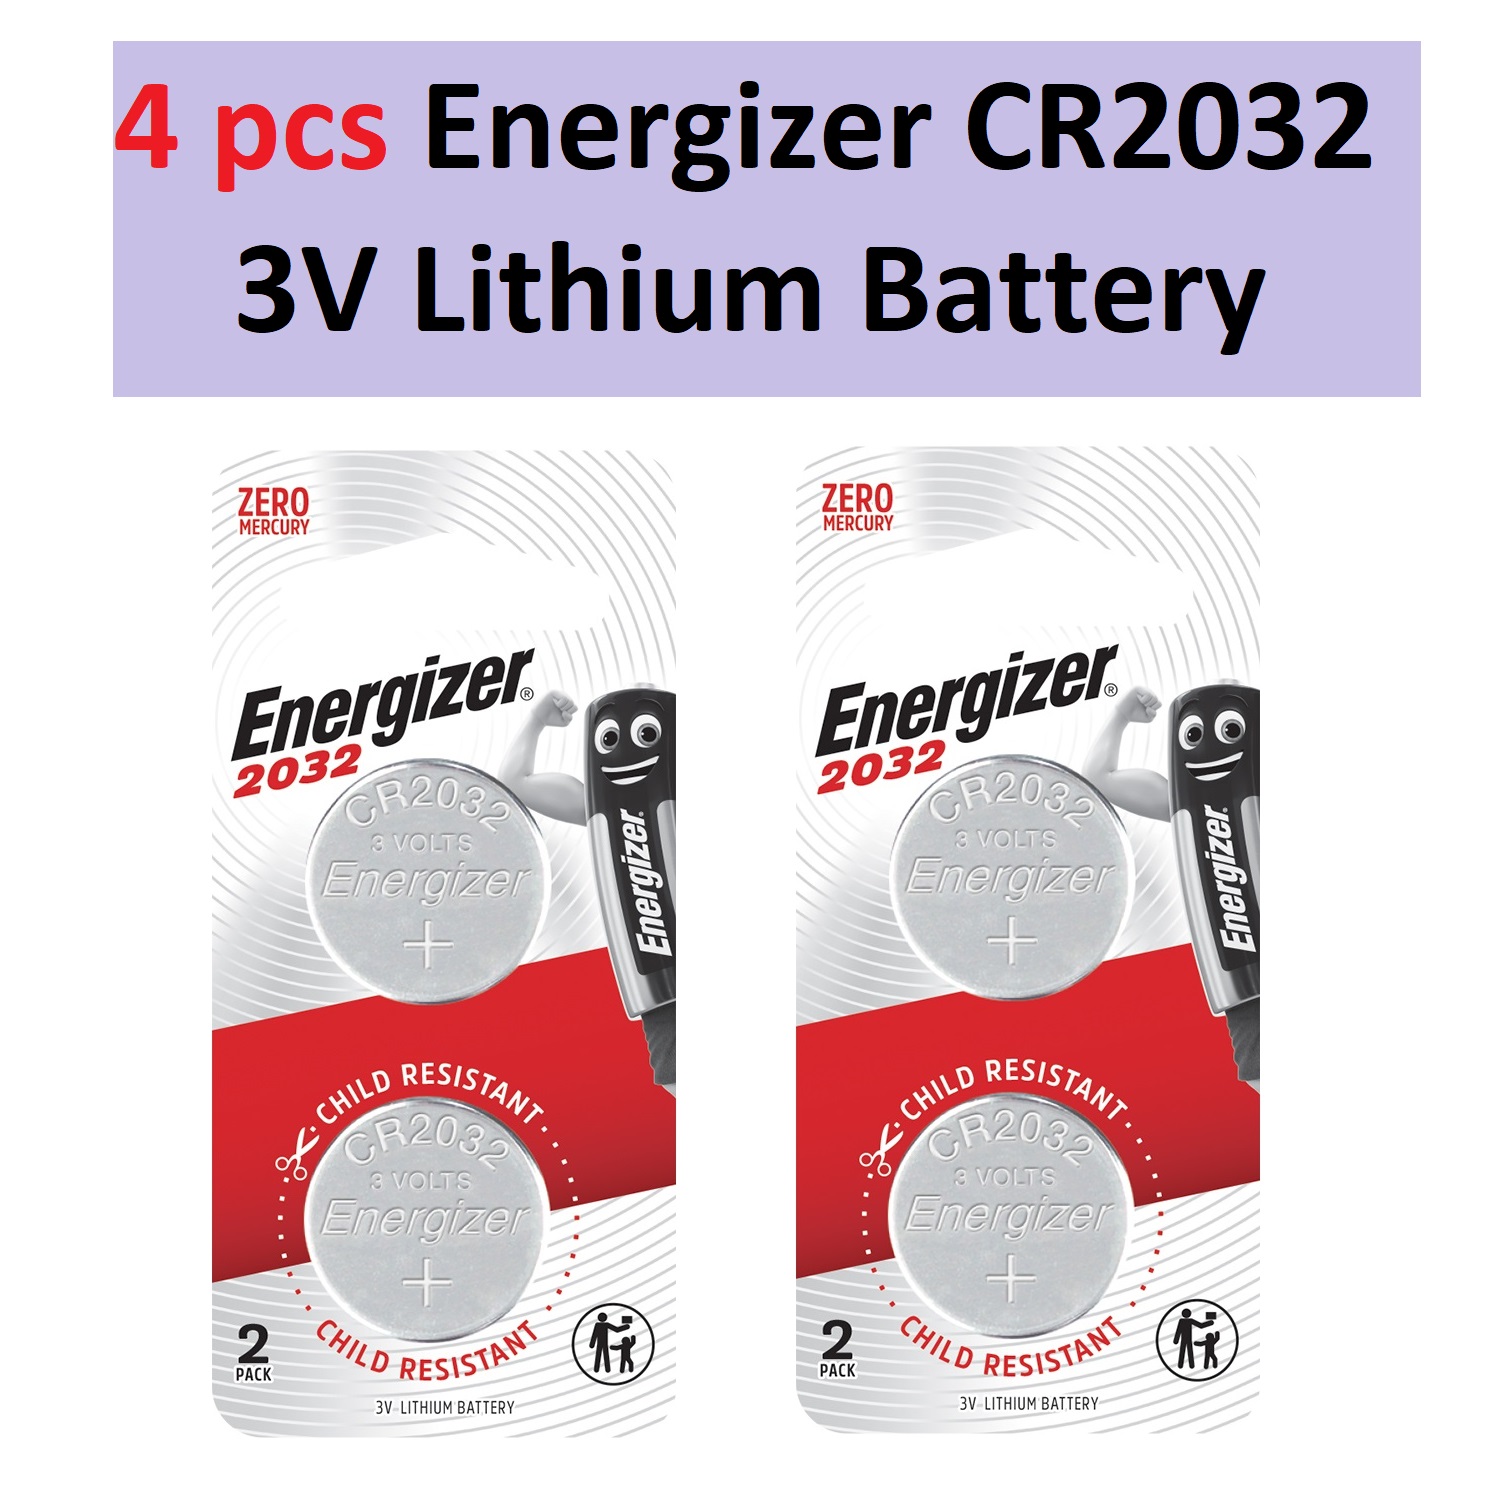 CR2032 Battery - CR2032 3V Lithium Battery, 4 pcs